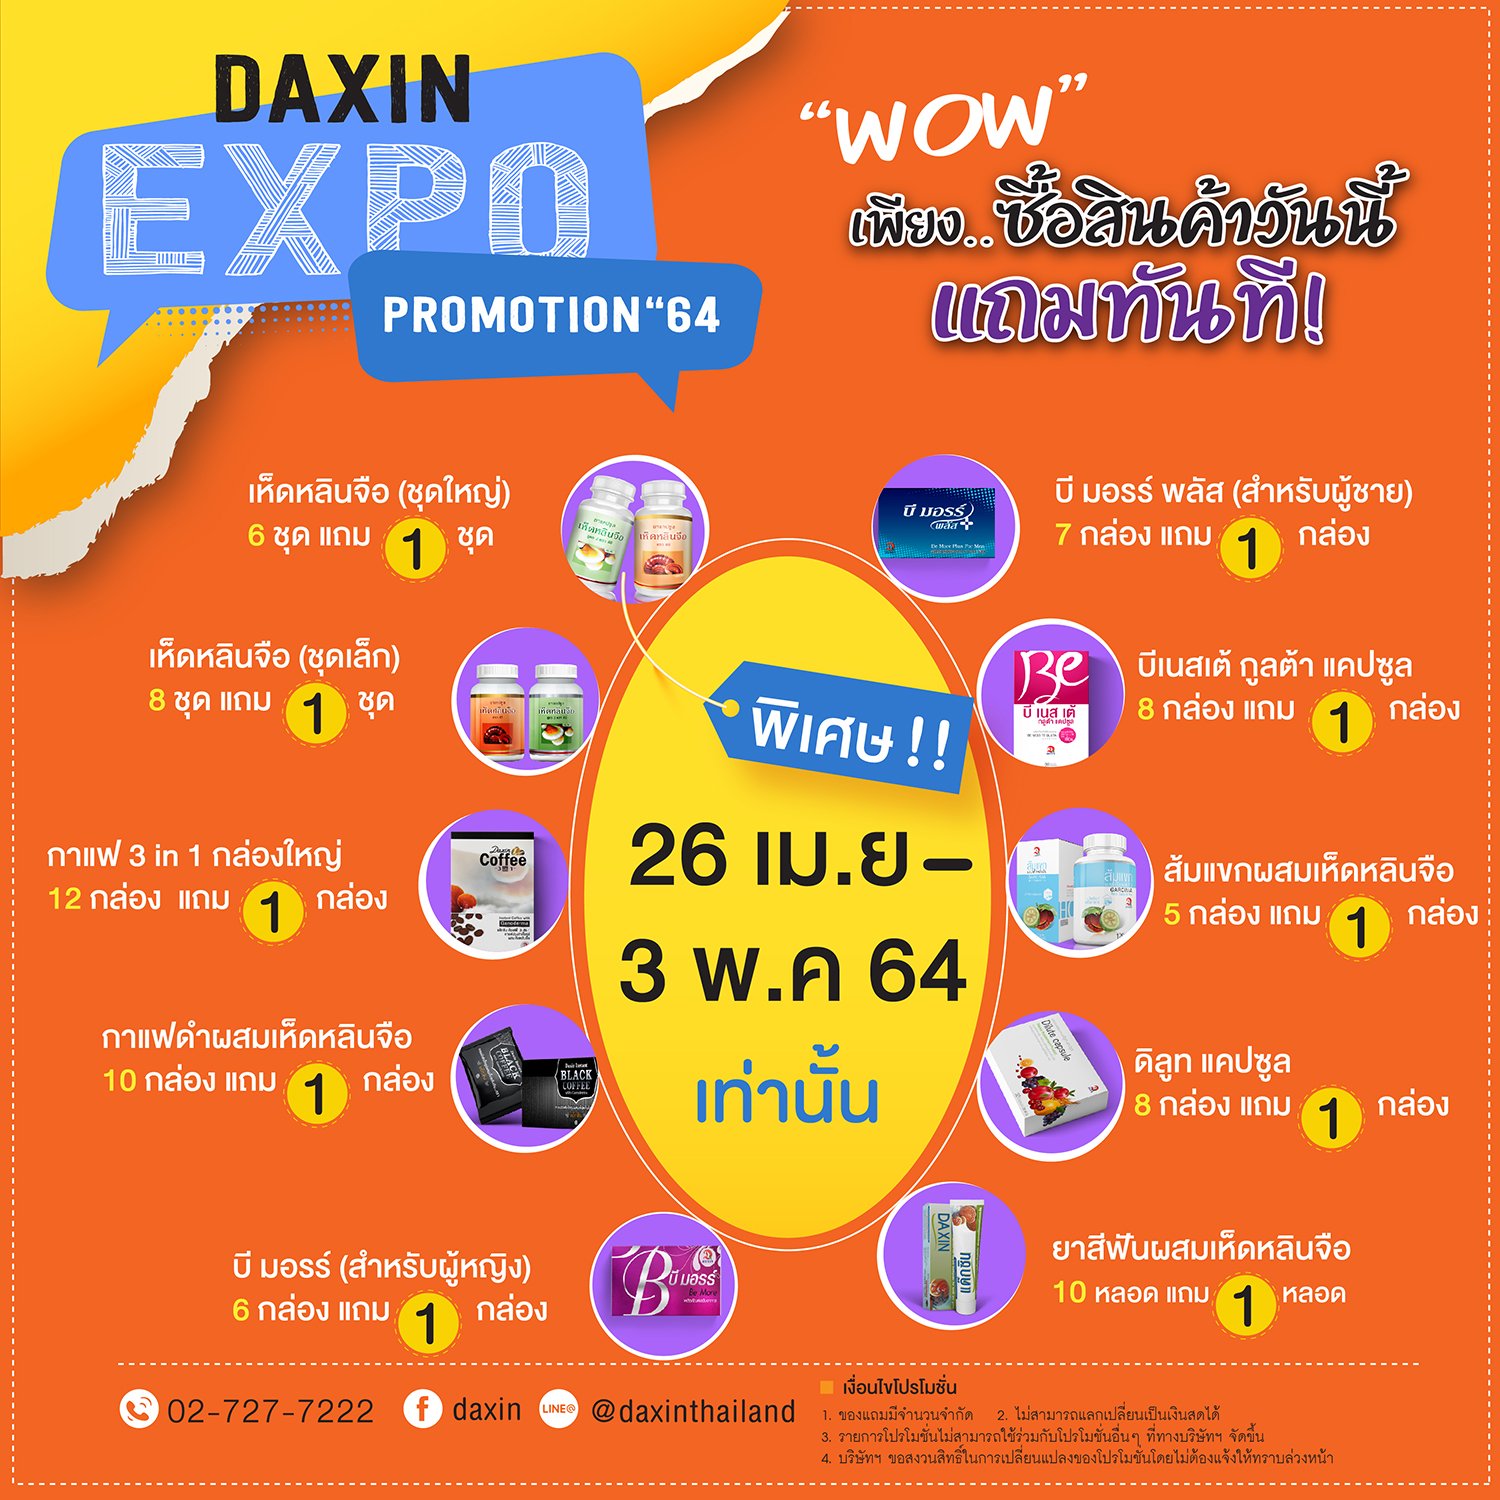 โปรโมชั่น "DAXIN EXPO PROMOTION 64"